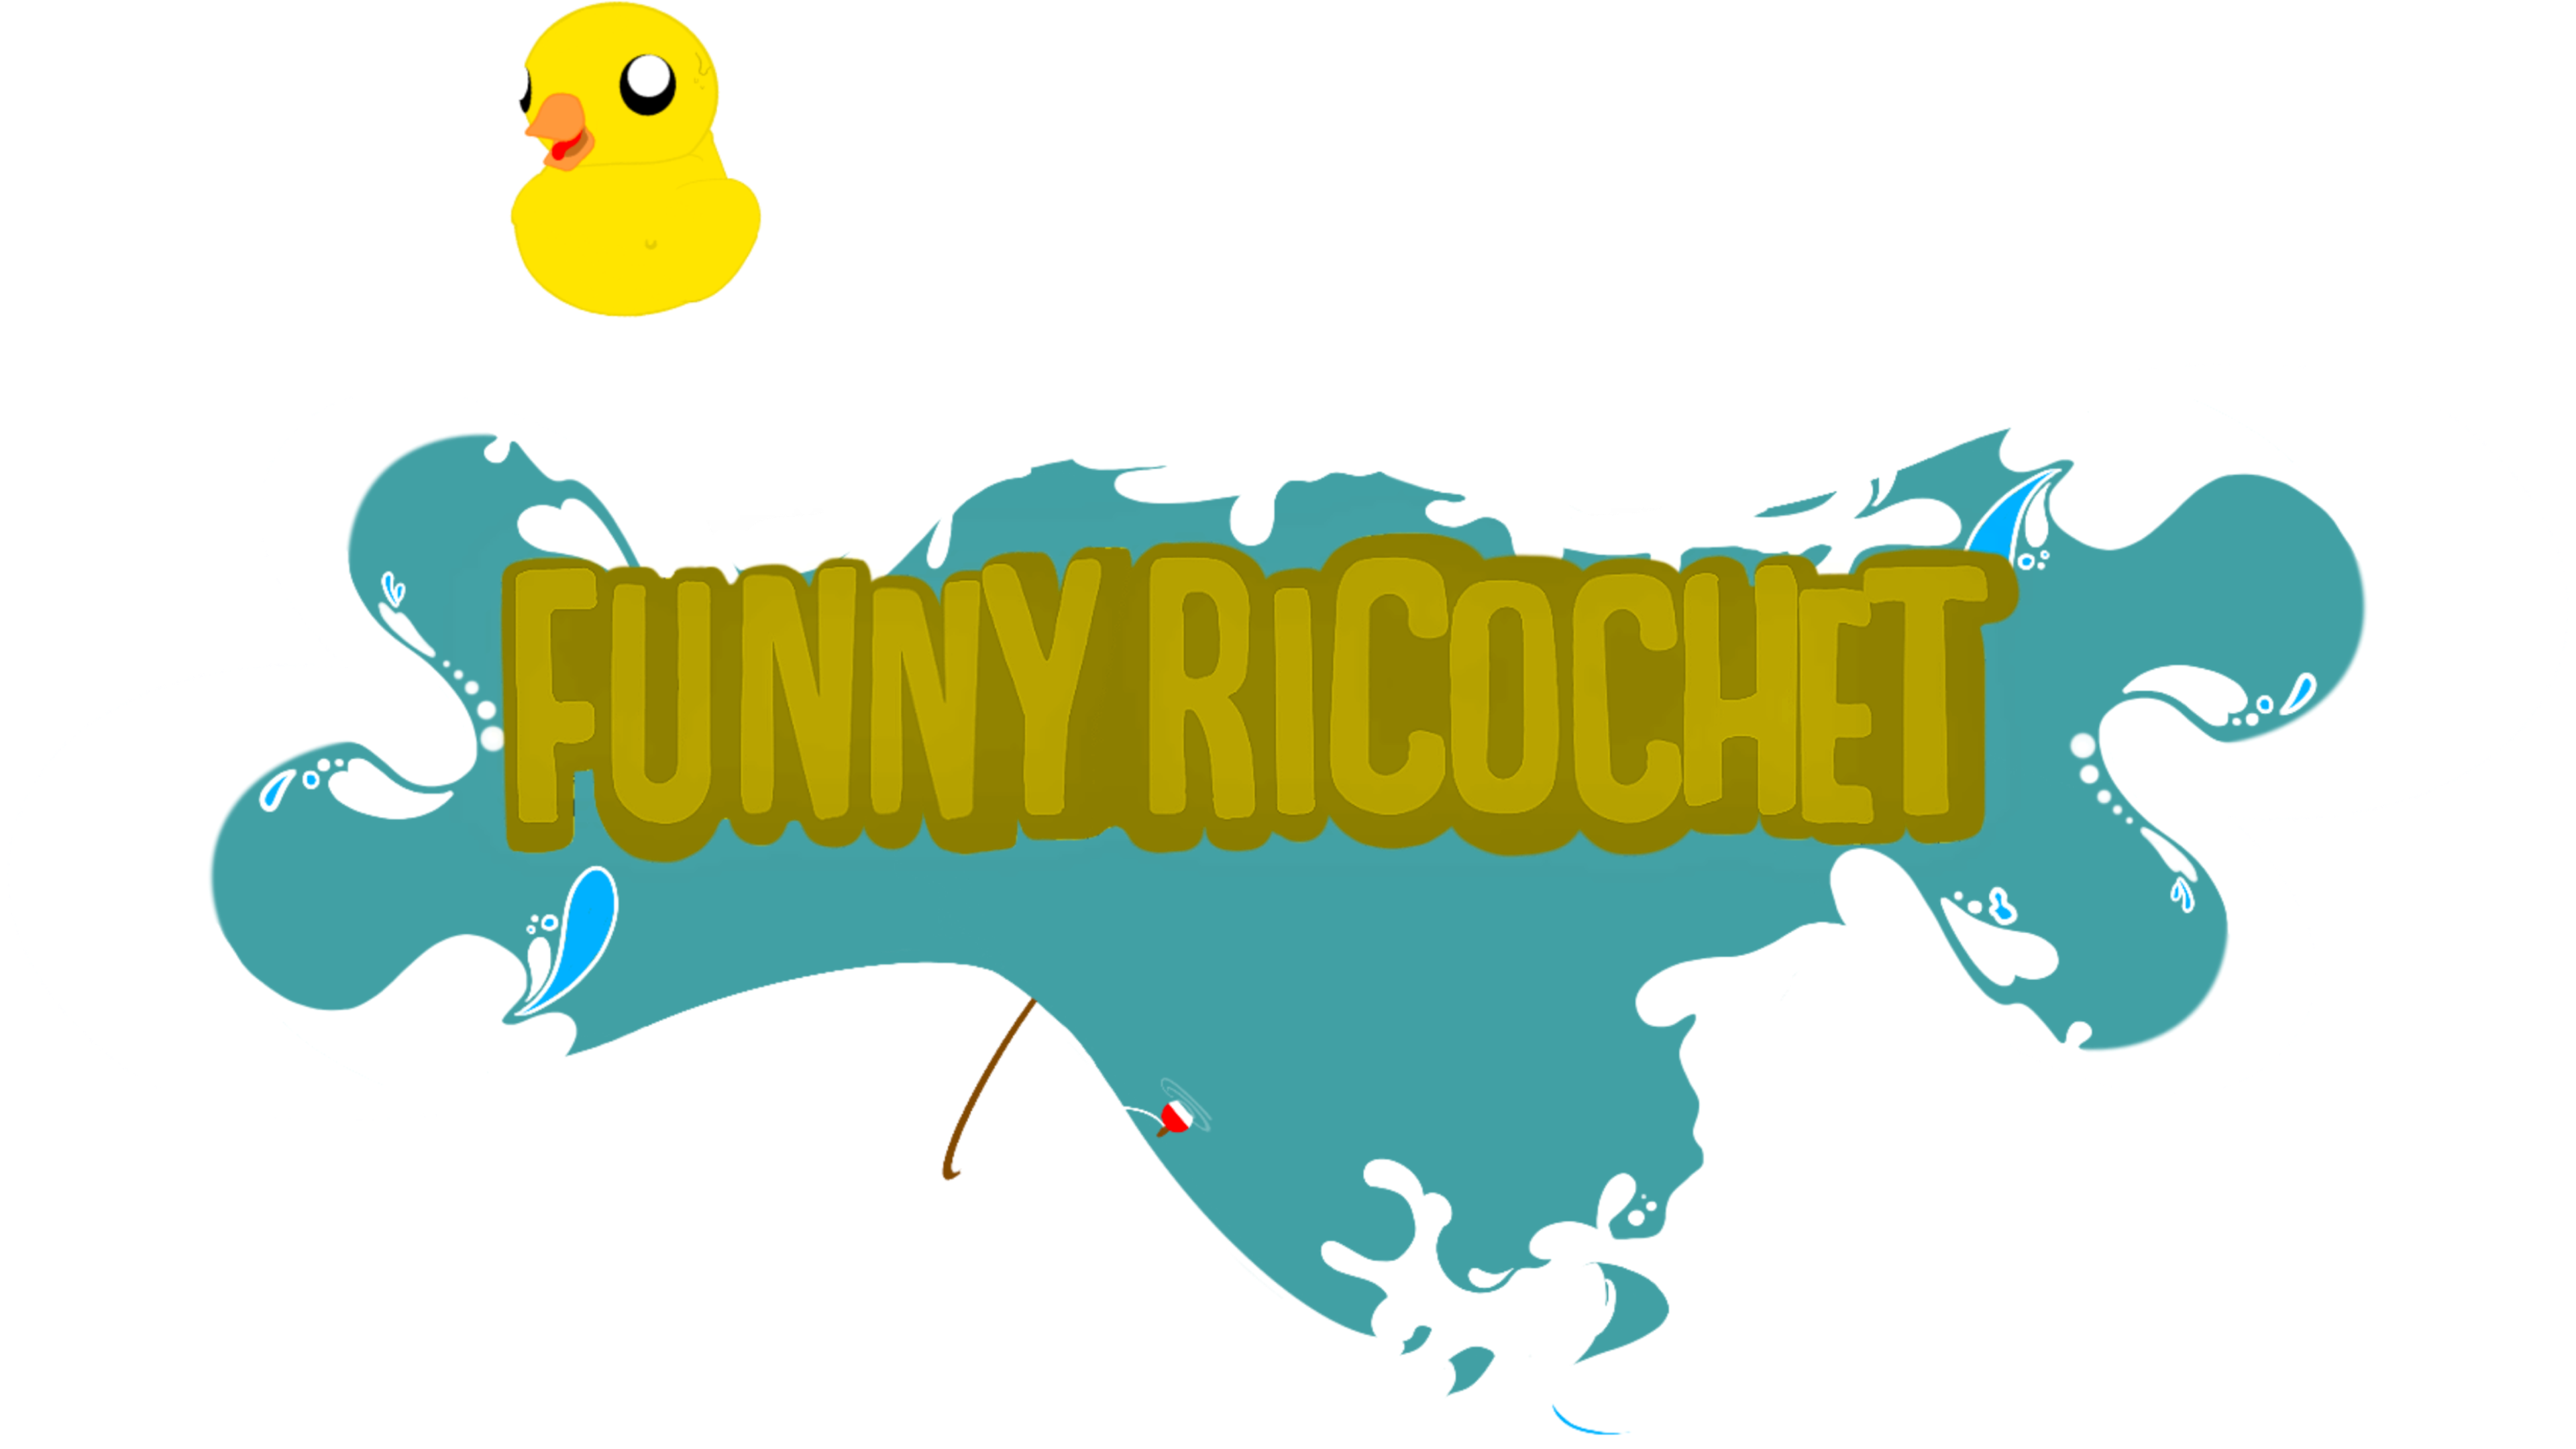 Funny Ricochet